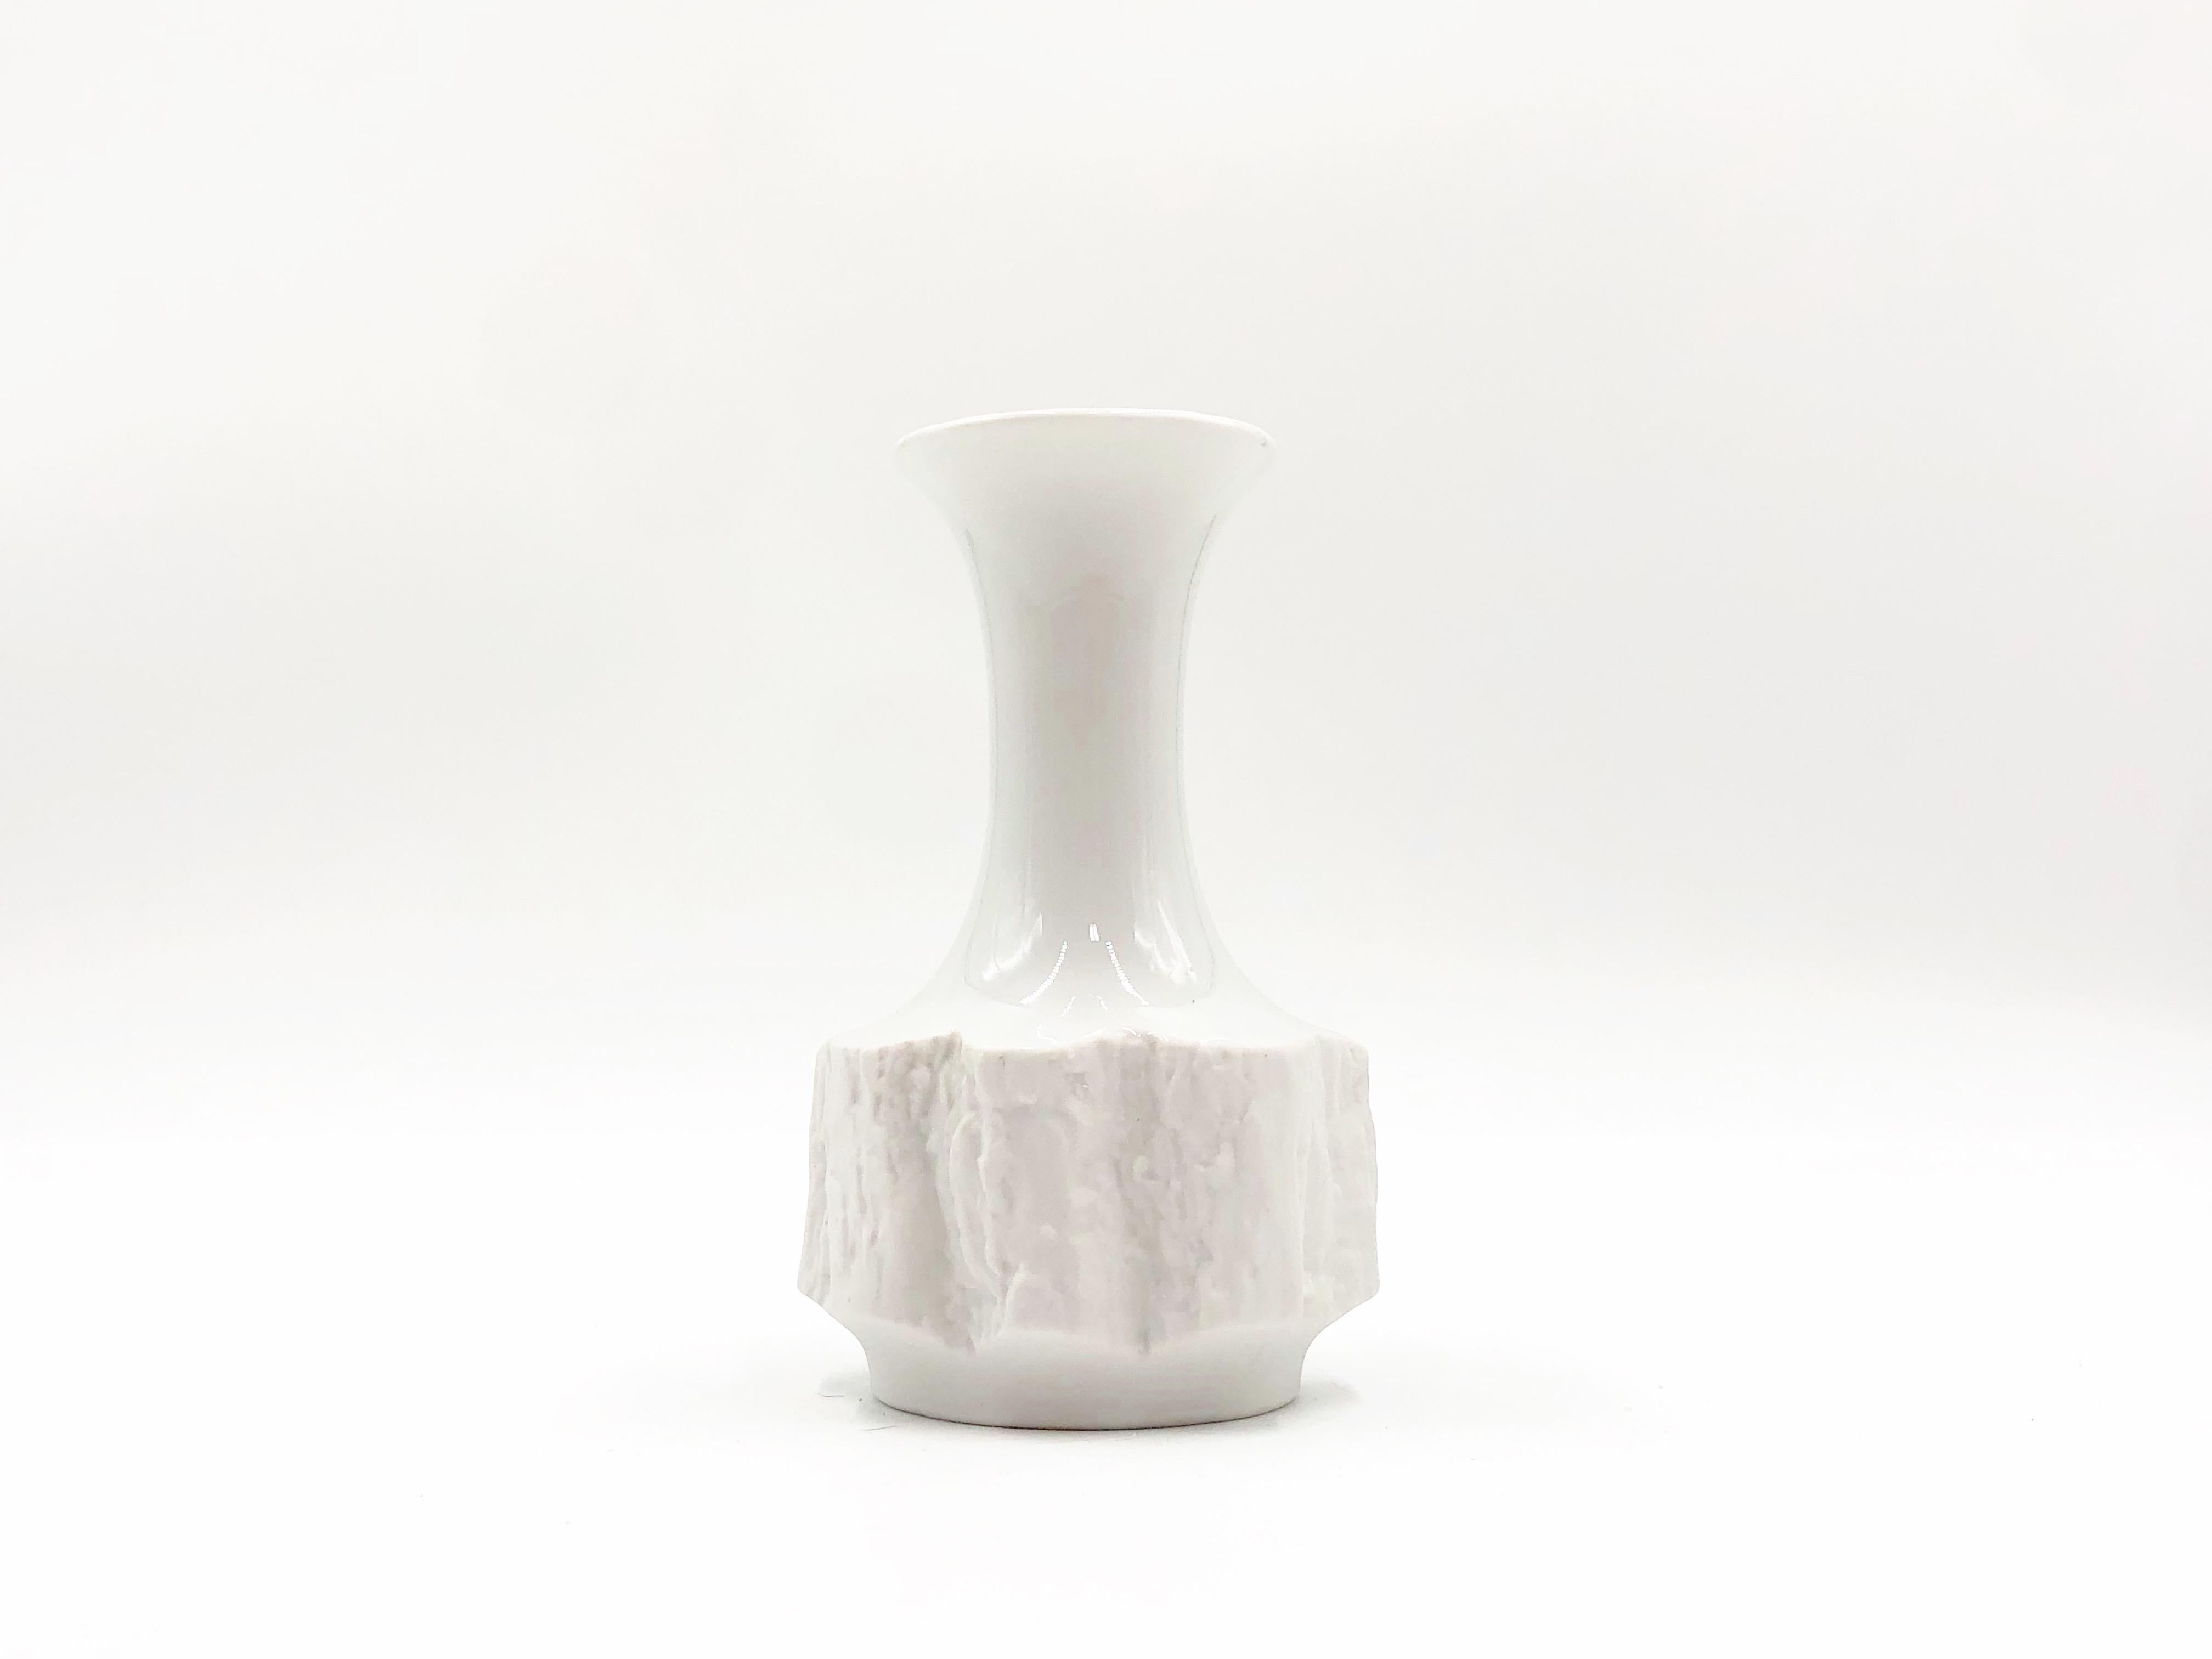 Magnifique vase décoratif vintage en porcelaine fine d'os de Bareuther, vers les années 1970.

Détails :
- 5,5